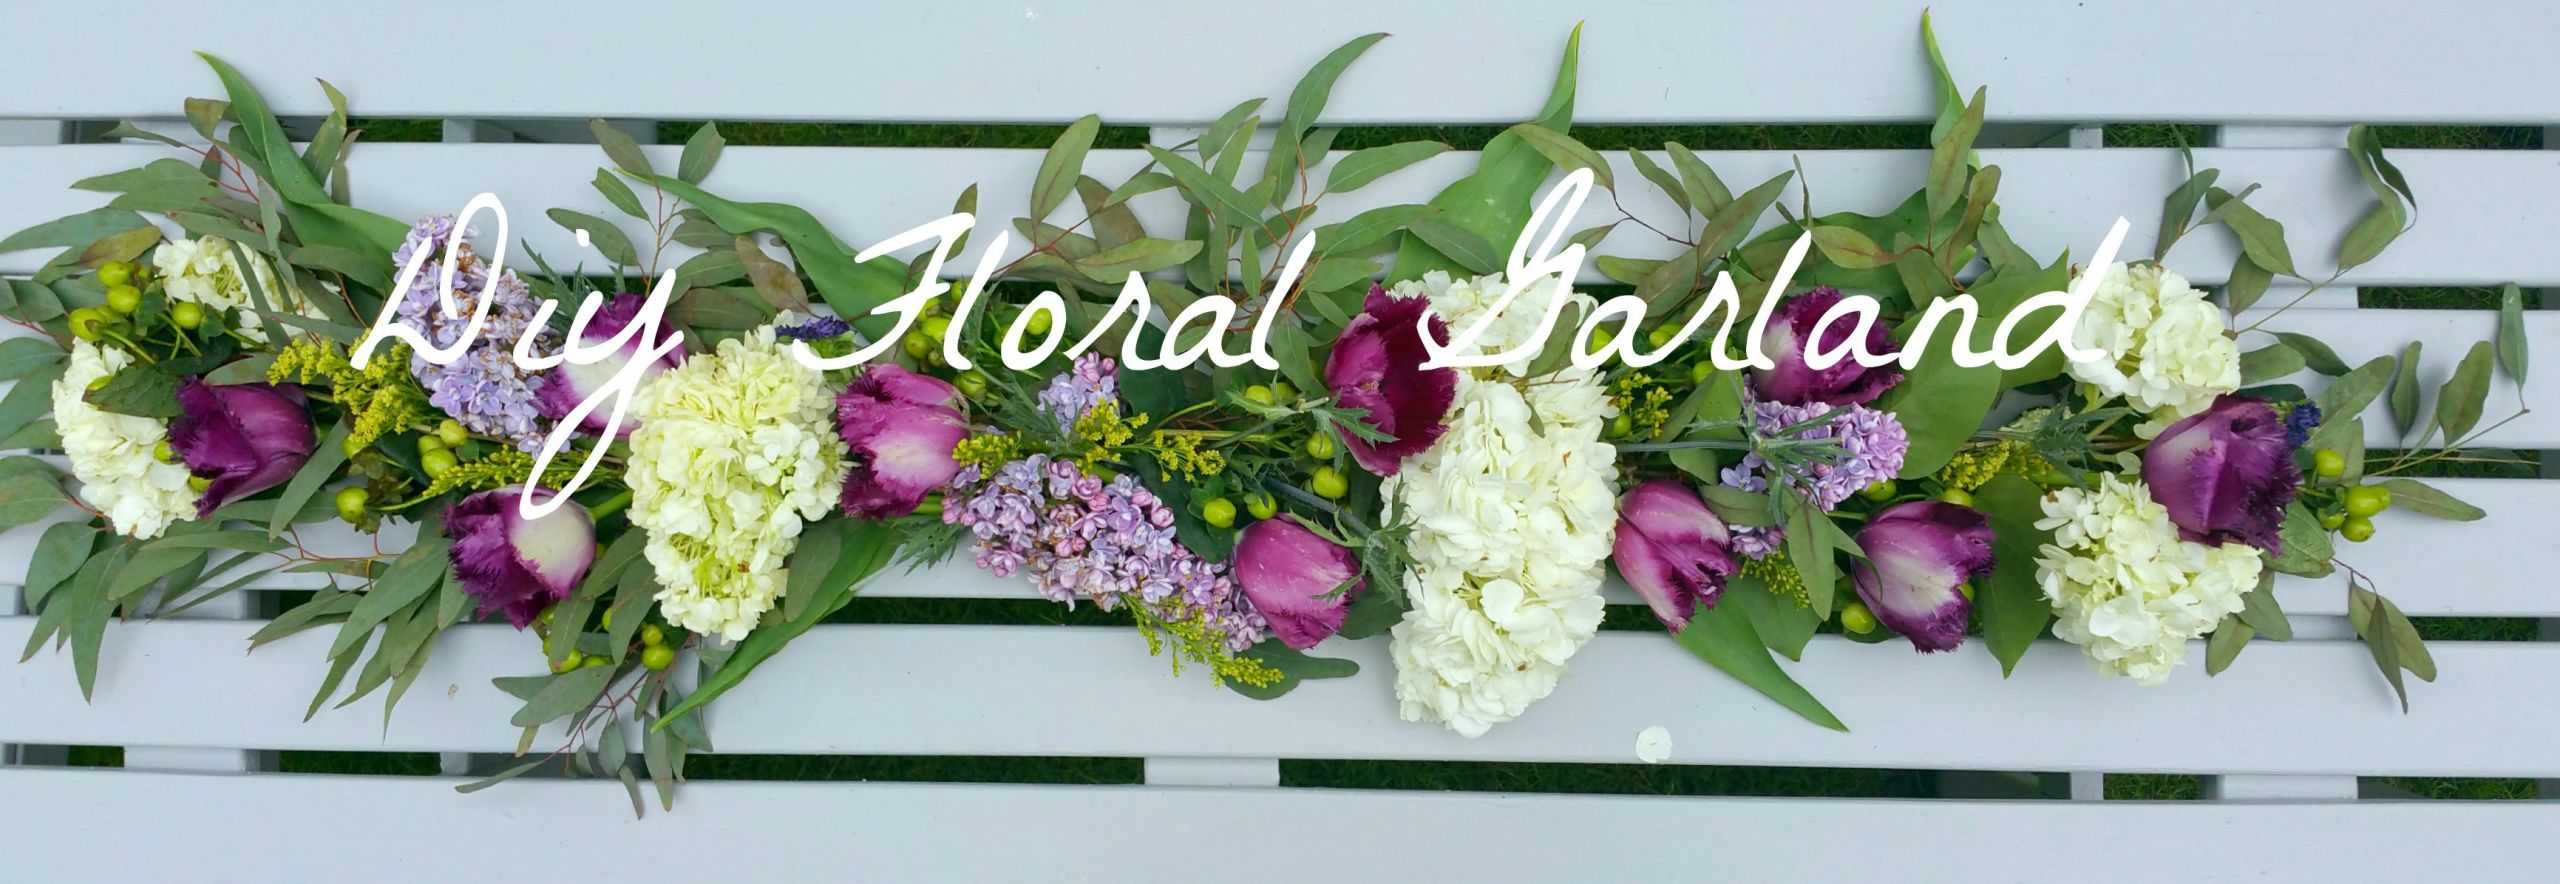 Wedding Garland DIY
 DIY Floral Table Garland · A Plentiful Life